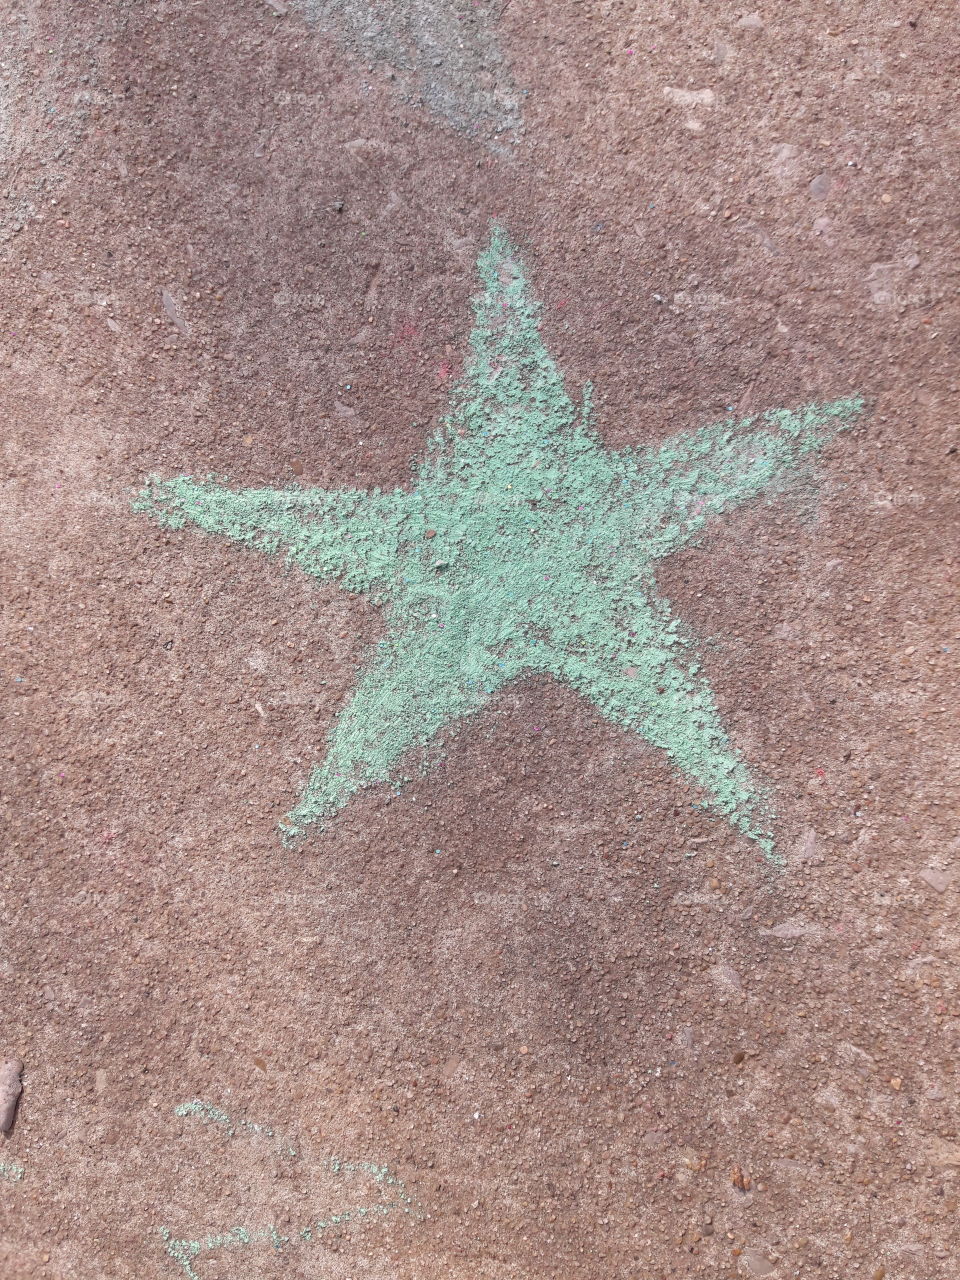 chalk star